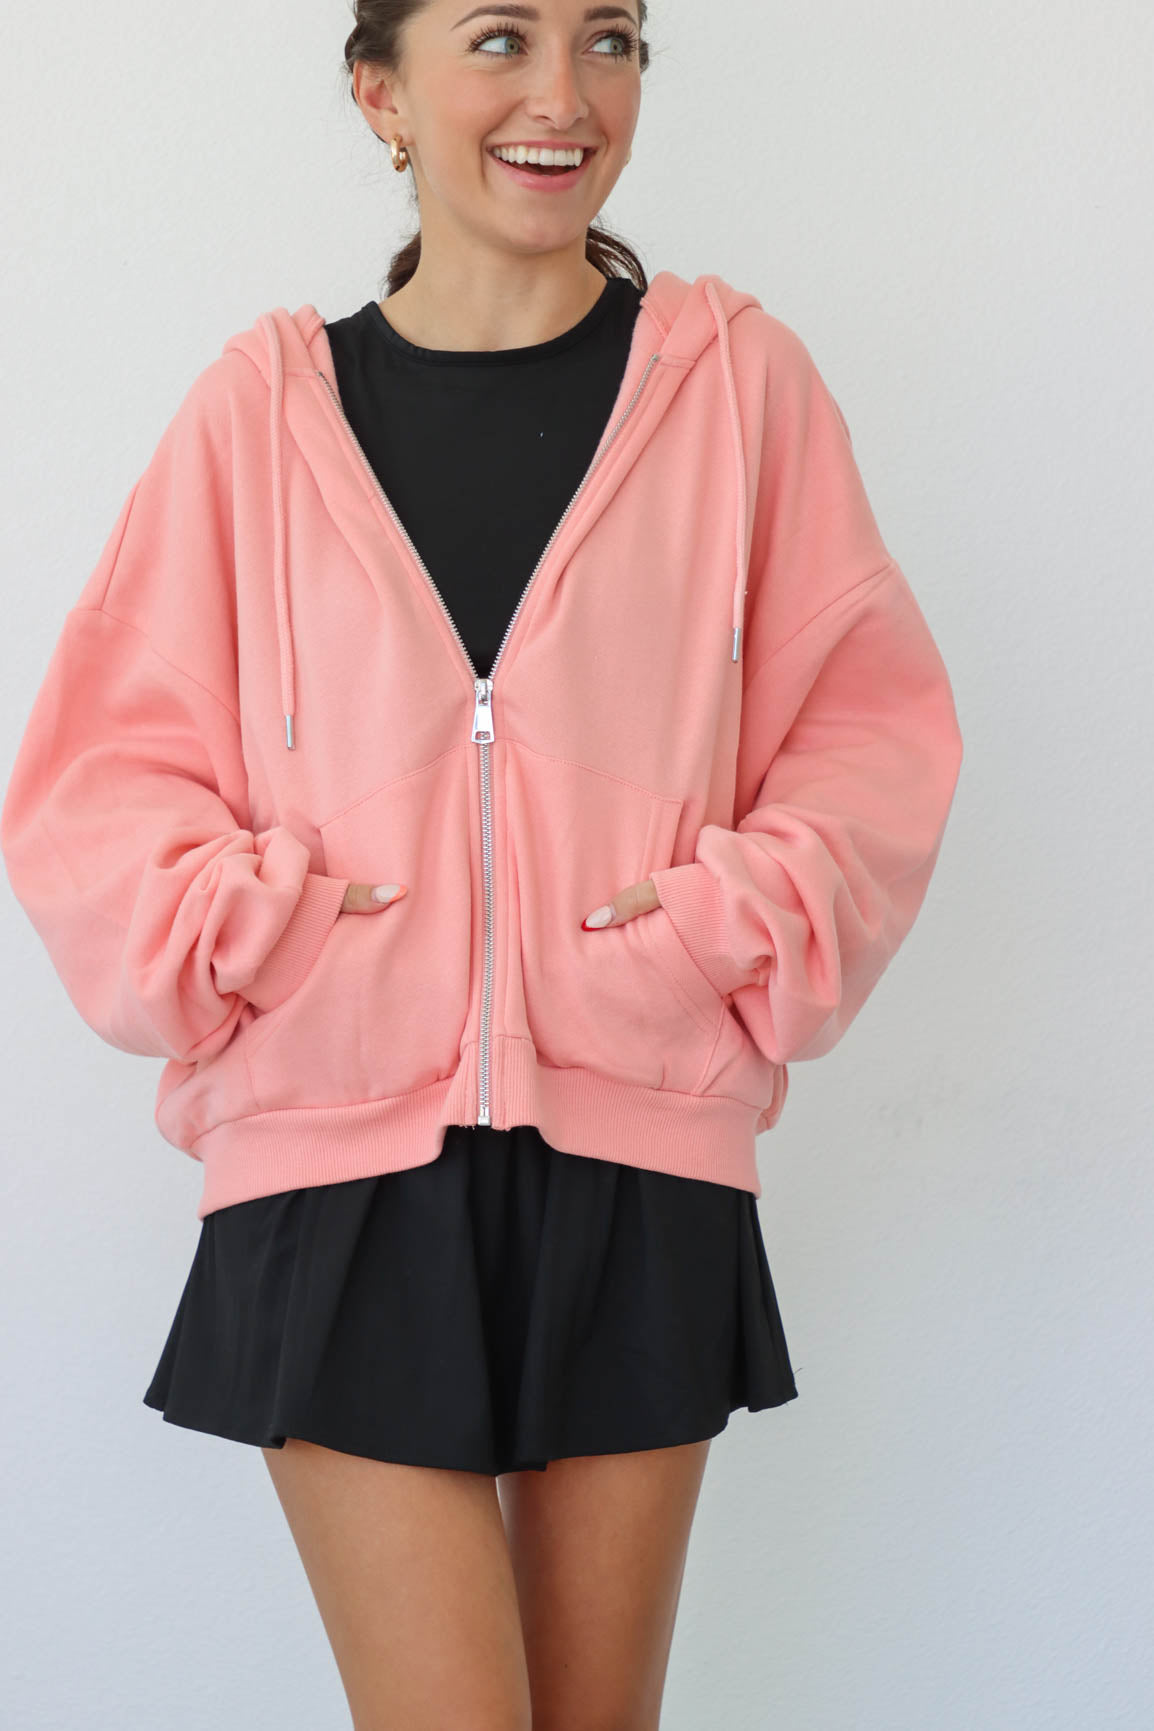 girl wearing pink hoodie